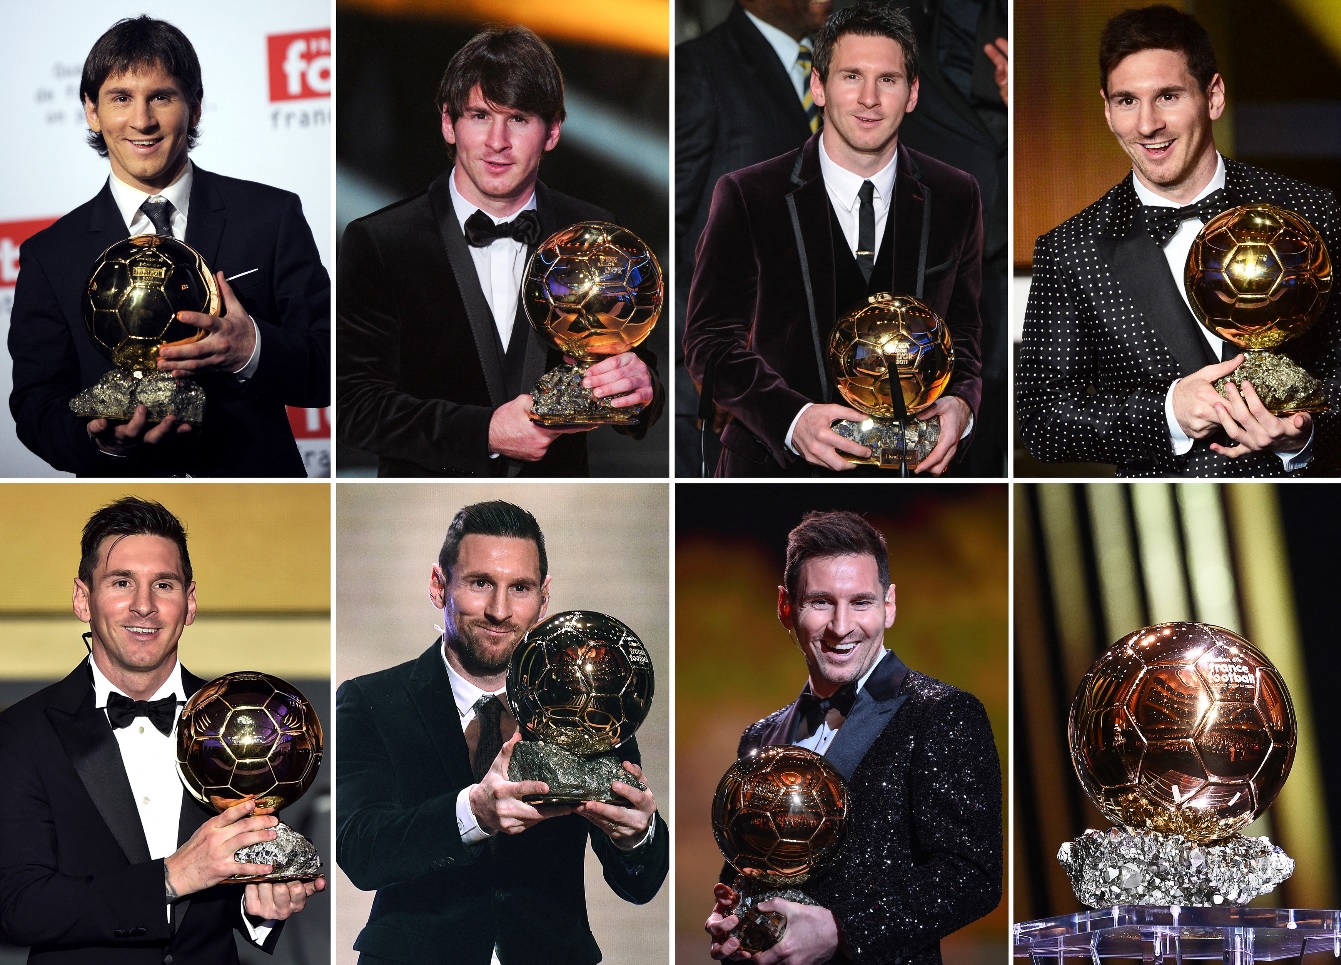 Lionel Messi, uimit şi el după al şaptelea Balon de Aur câştigat: „Nu ştiu dacă acest record va fi doborât. Este ceva impresionant